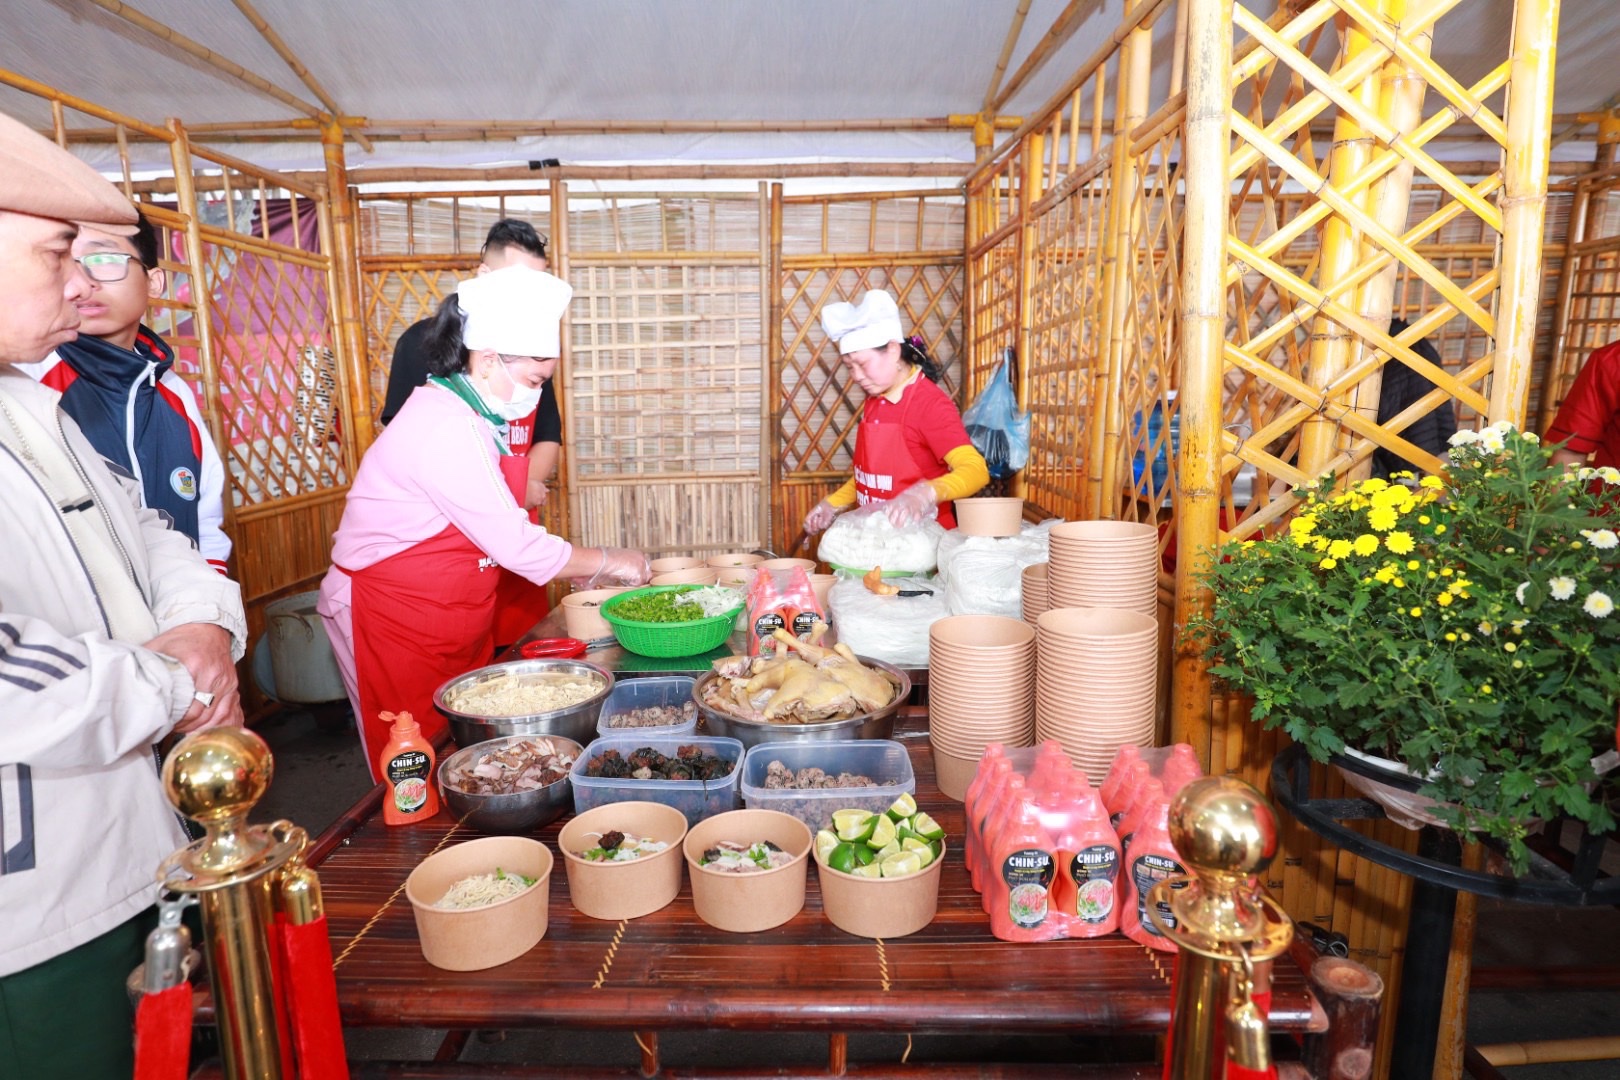 Hàng ngàn khách tham quan chứng kiến đầu bếp nổi tiếng chế biến phở cùng tương ớt Chin-su - Ảnh 3.